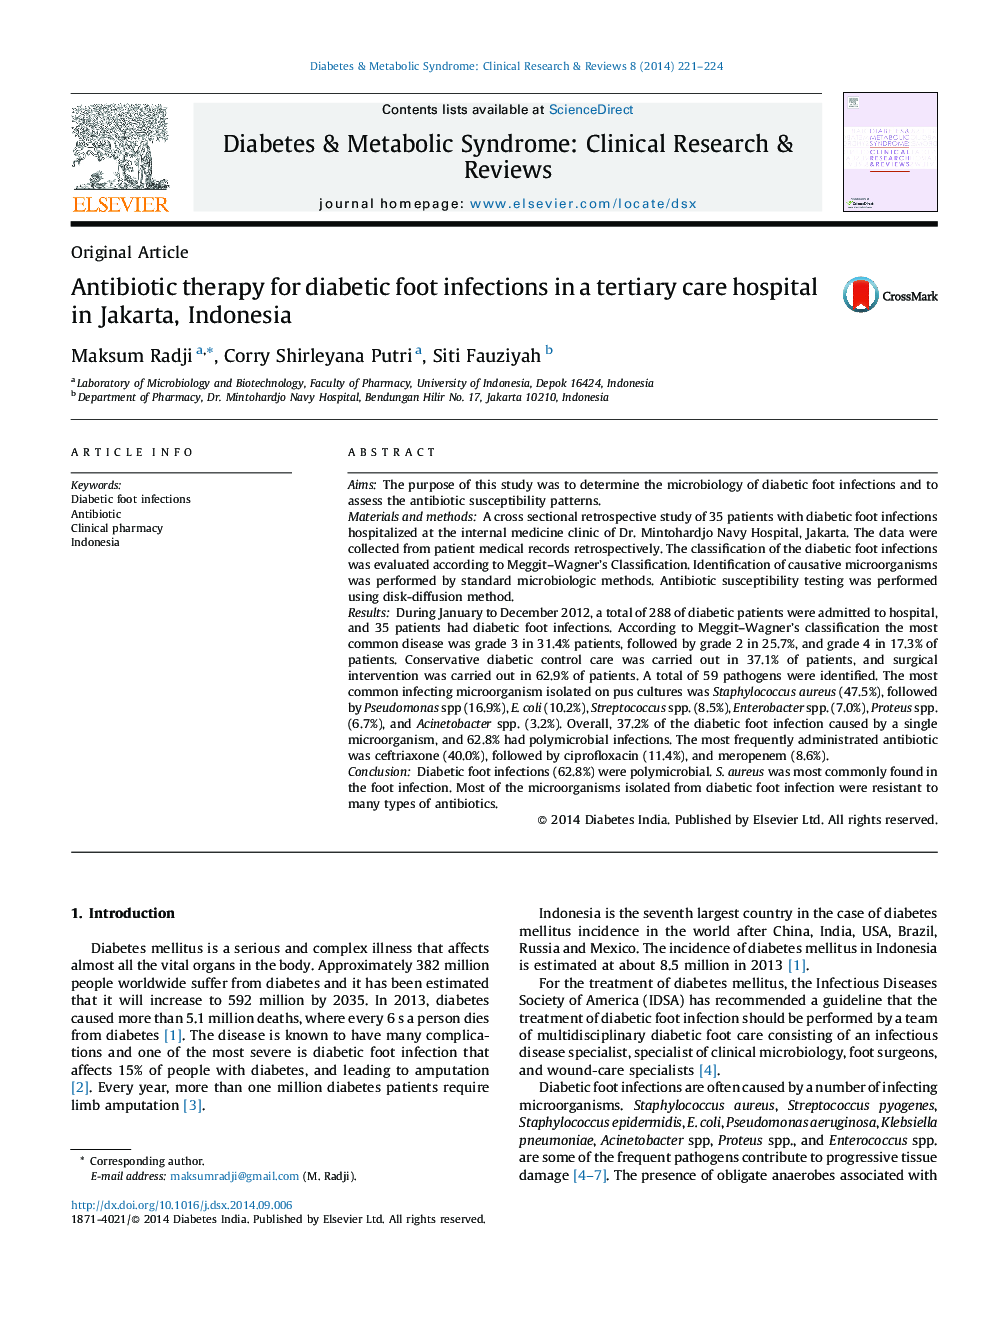 آنتی بیوتیک برای عفونت های پا دیابتی در یک بیمارستان مراقبت های ویژه در جاکارتا، اندونزی 